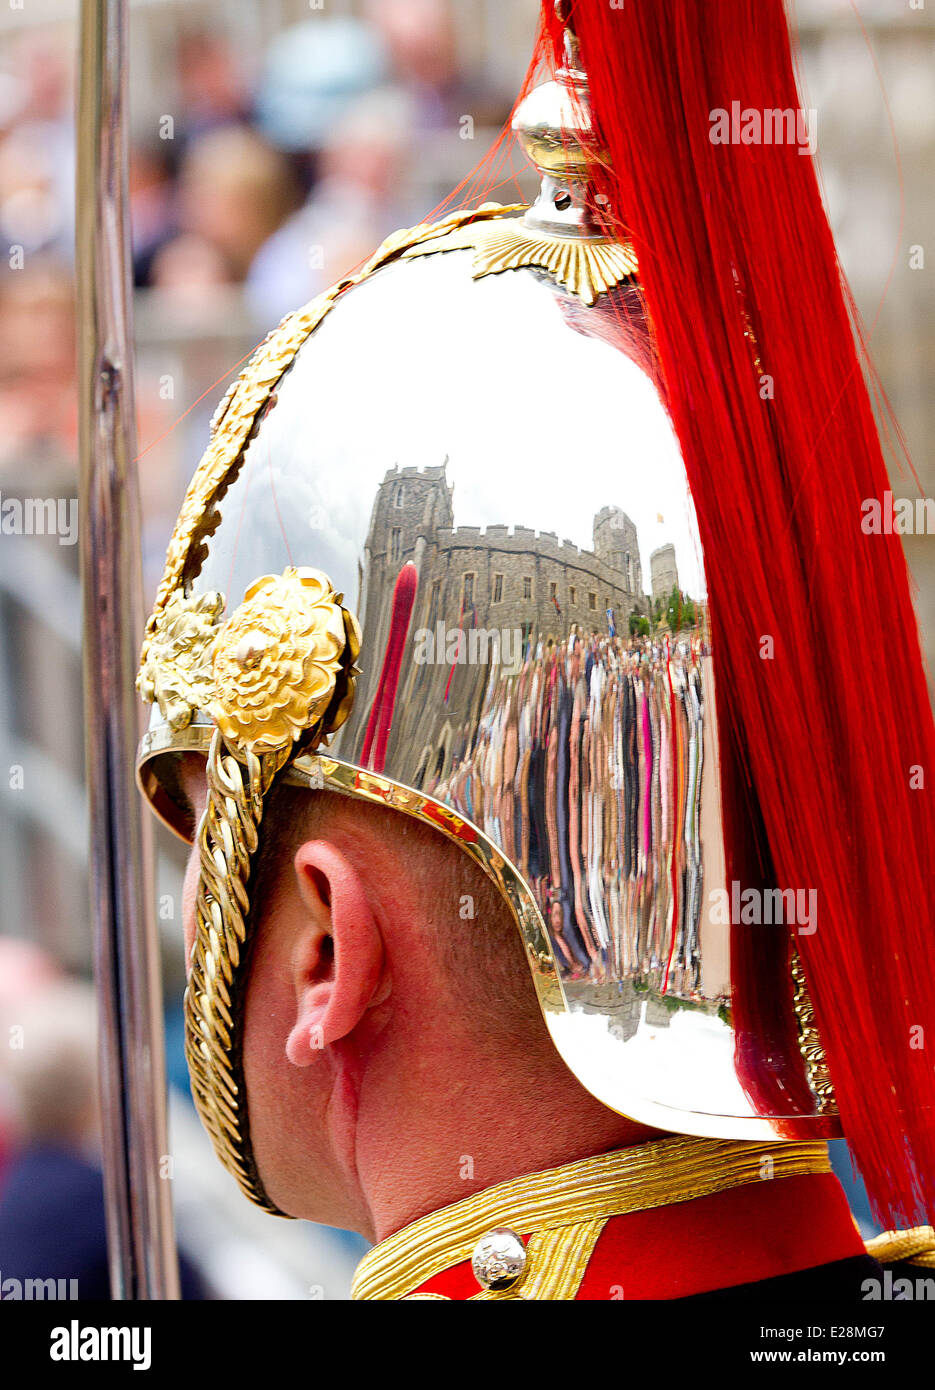 Windsor, Reino Unido. 16 de junio de 2014. Guardia en el Castillo de Windsor durante la Orden de Servicio La atadura en Windsor, Reino Unido, 16 de junio de 2014. Crédito: dpa/Alamy Live News Foto de stock